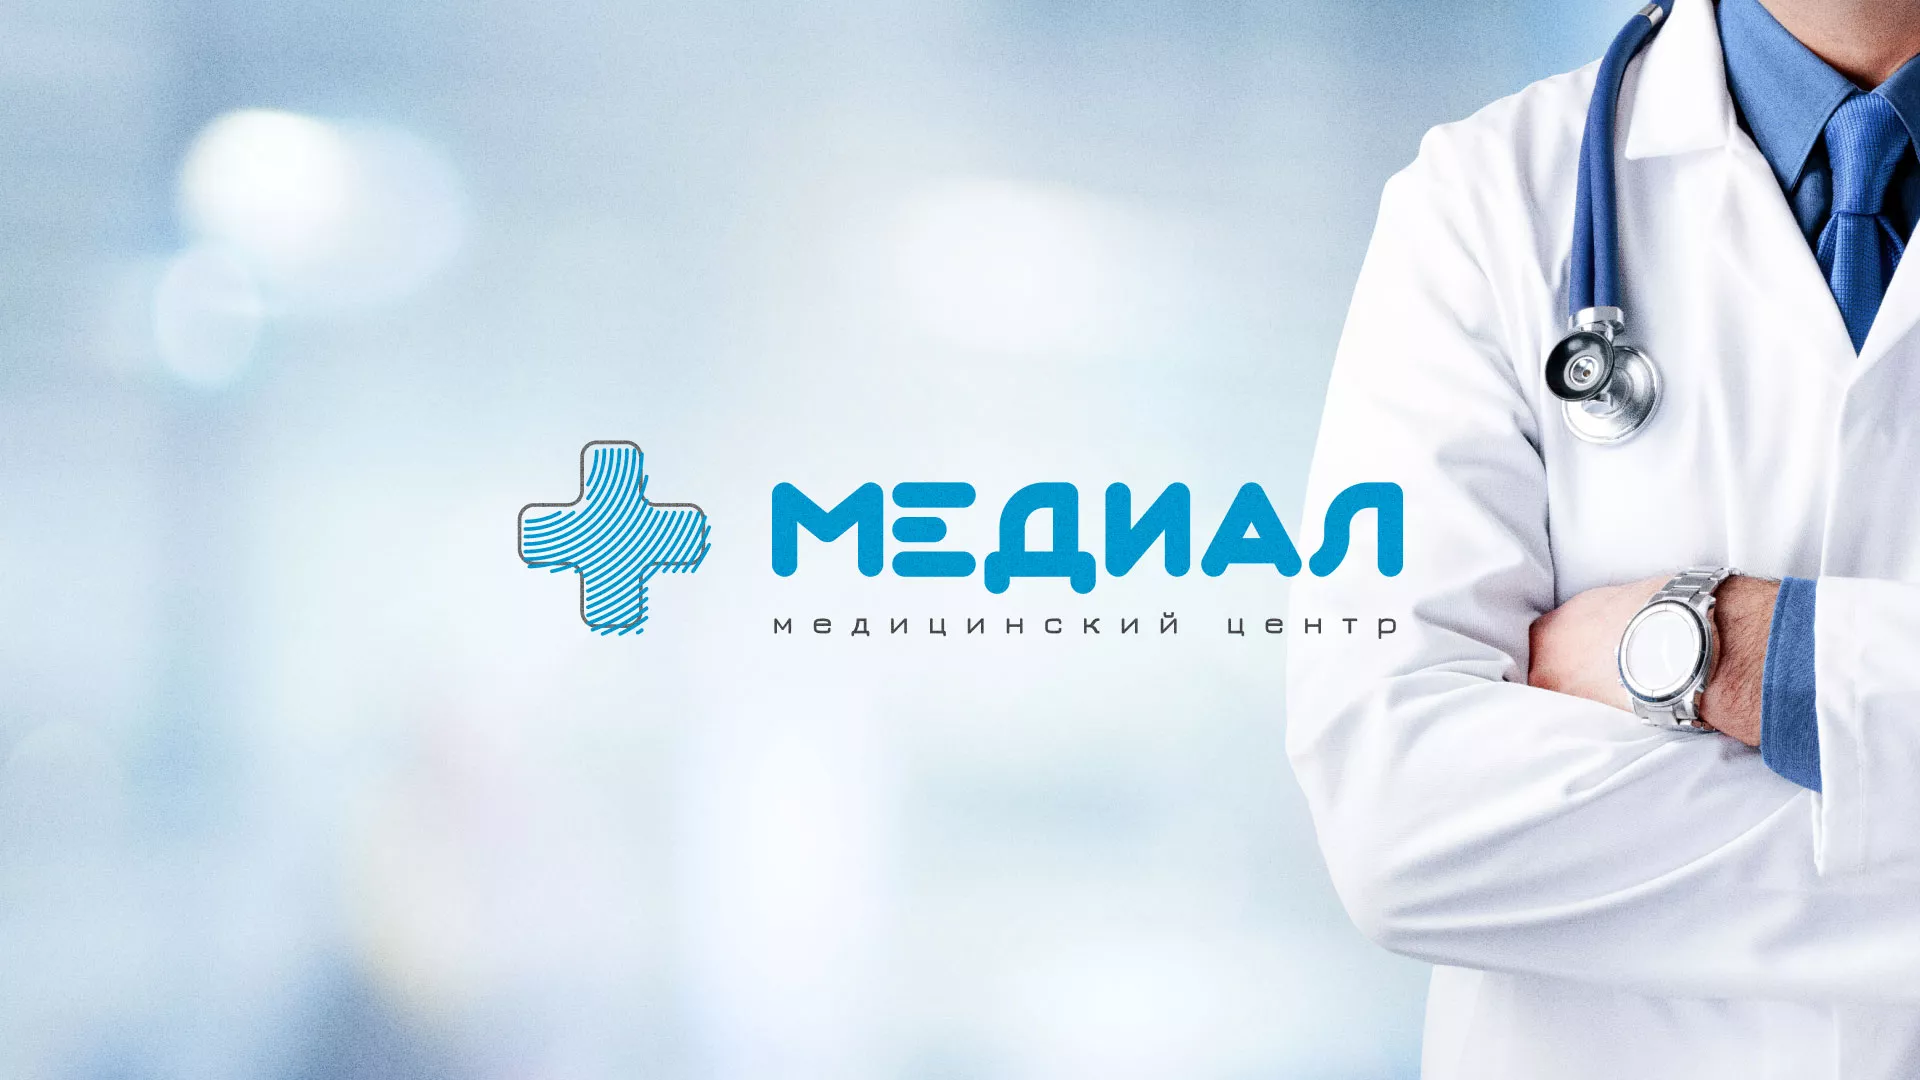 Создание сайта для медицинского центра «Медиал» в Челябинске